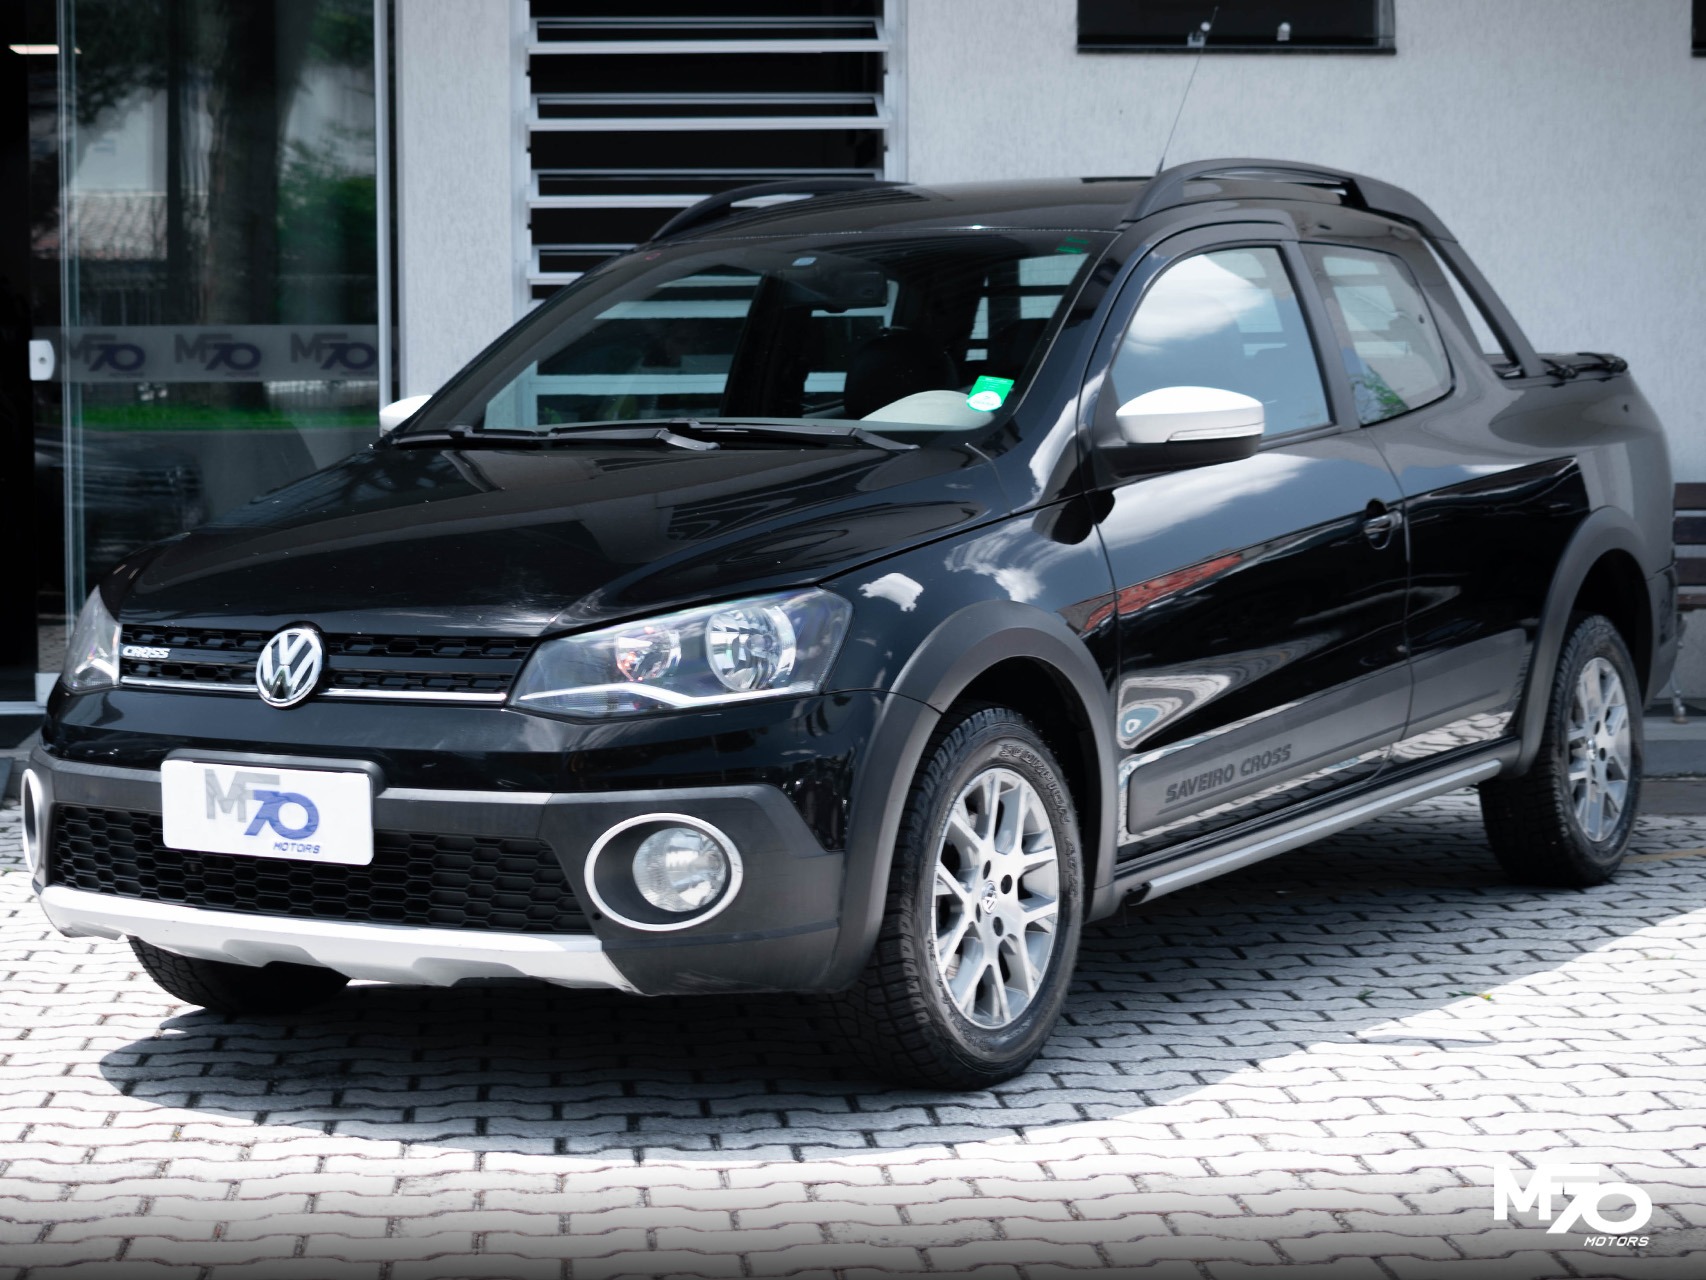 Volkswagen - SAVEIRO 1.6 Cross CD 16V - 2015 - 67.000,00 - 1789962